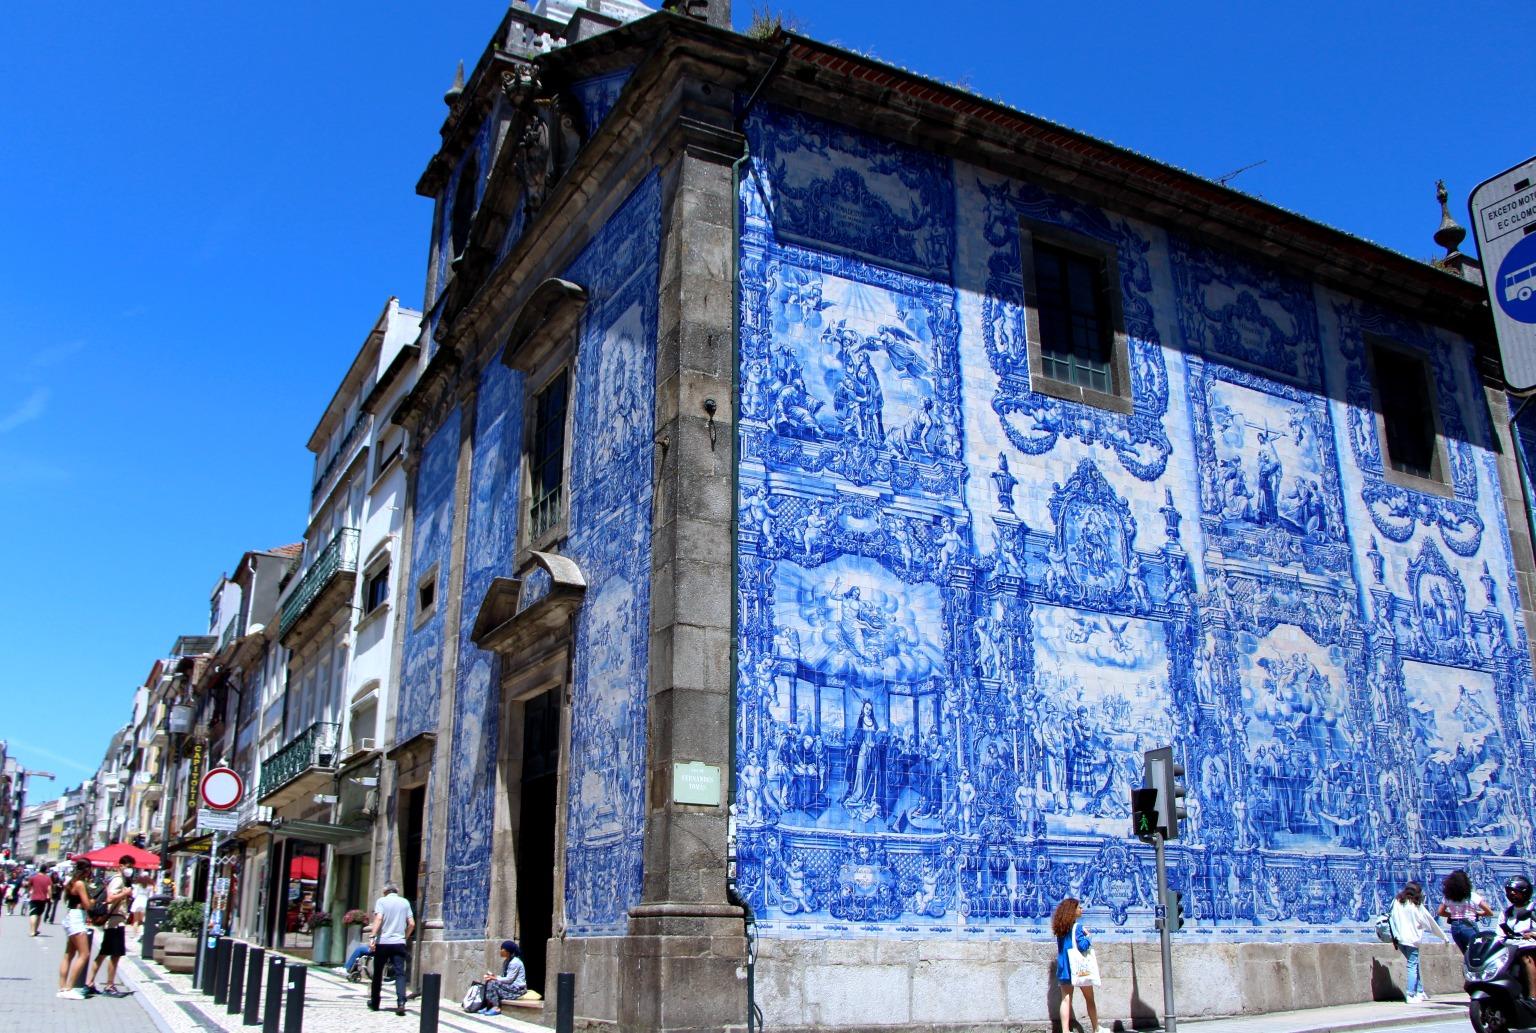 Capela das Almas, adorned with beautiful azulejos, showcasing Portuguese artistic mastery.